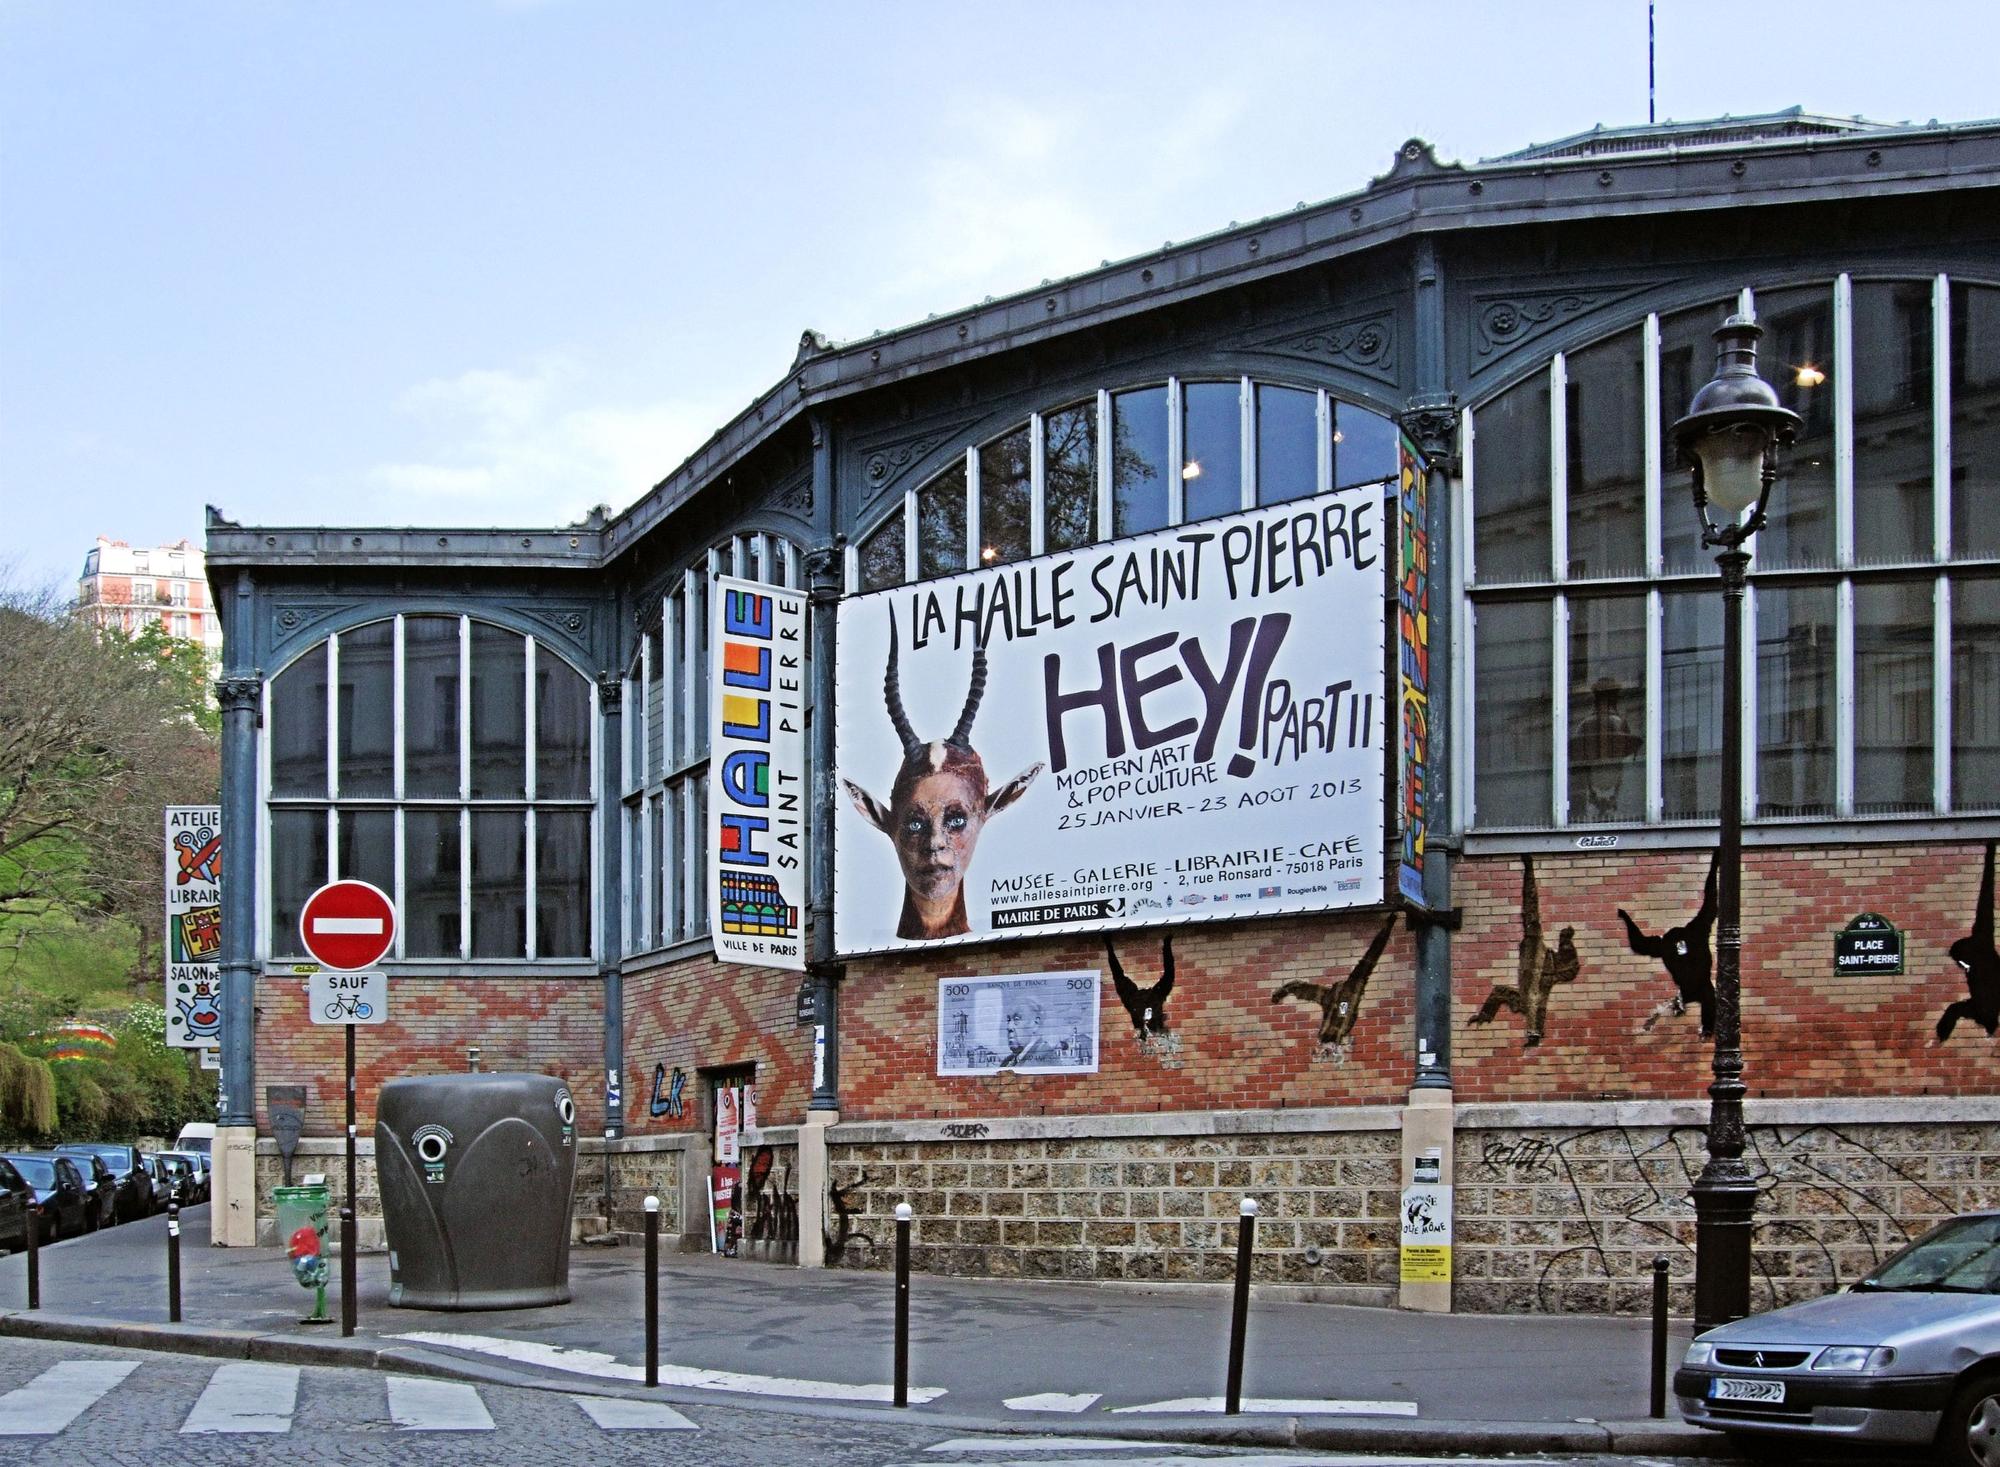 La Halle Saint Pierre, à Paris, abrite un musée de l'art brut, une forme d'art singulier que les Lausannois connaissent particulièrement bien grâce à la Collection de l'Art Brut qu'abrite la capitale vaudoise. [CC-BY-SA - Jim Linwood]